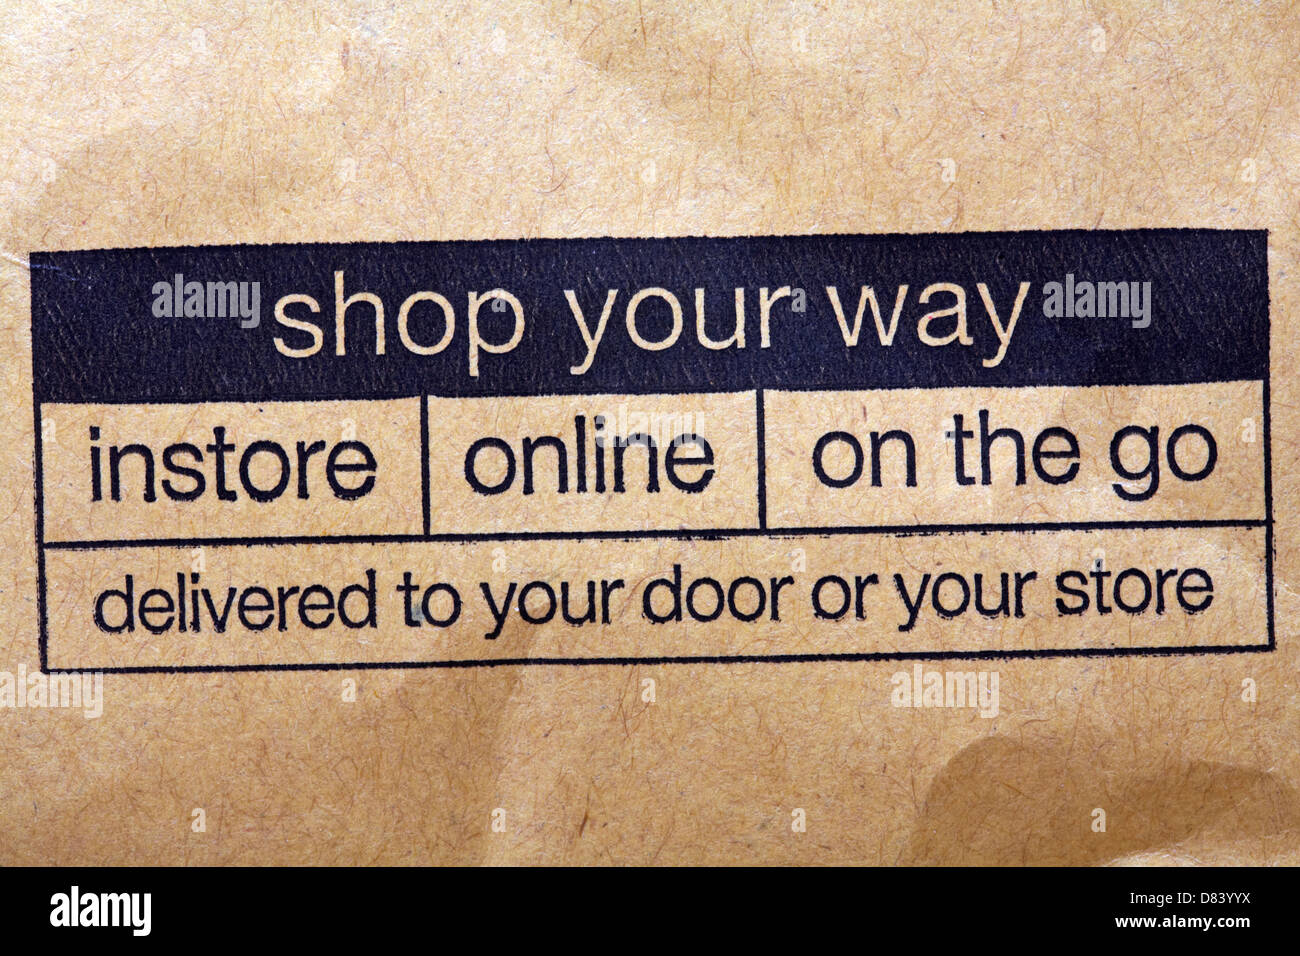 kaufen Sie Ihre Art und Weise Instore online unterwegs geliefert an Ihre Tür oder Ihren Speicherinformationen auf braunen Umschlag aus Ihrer M & S Stockfoto